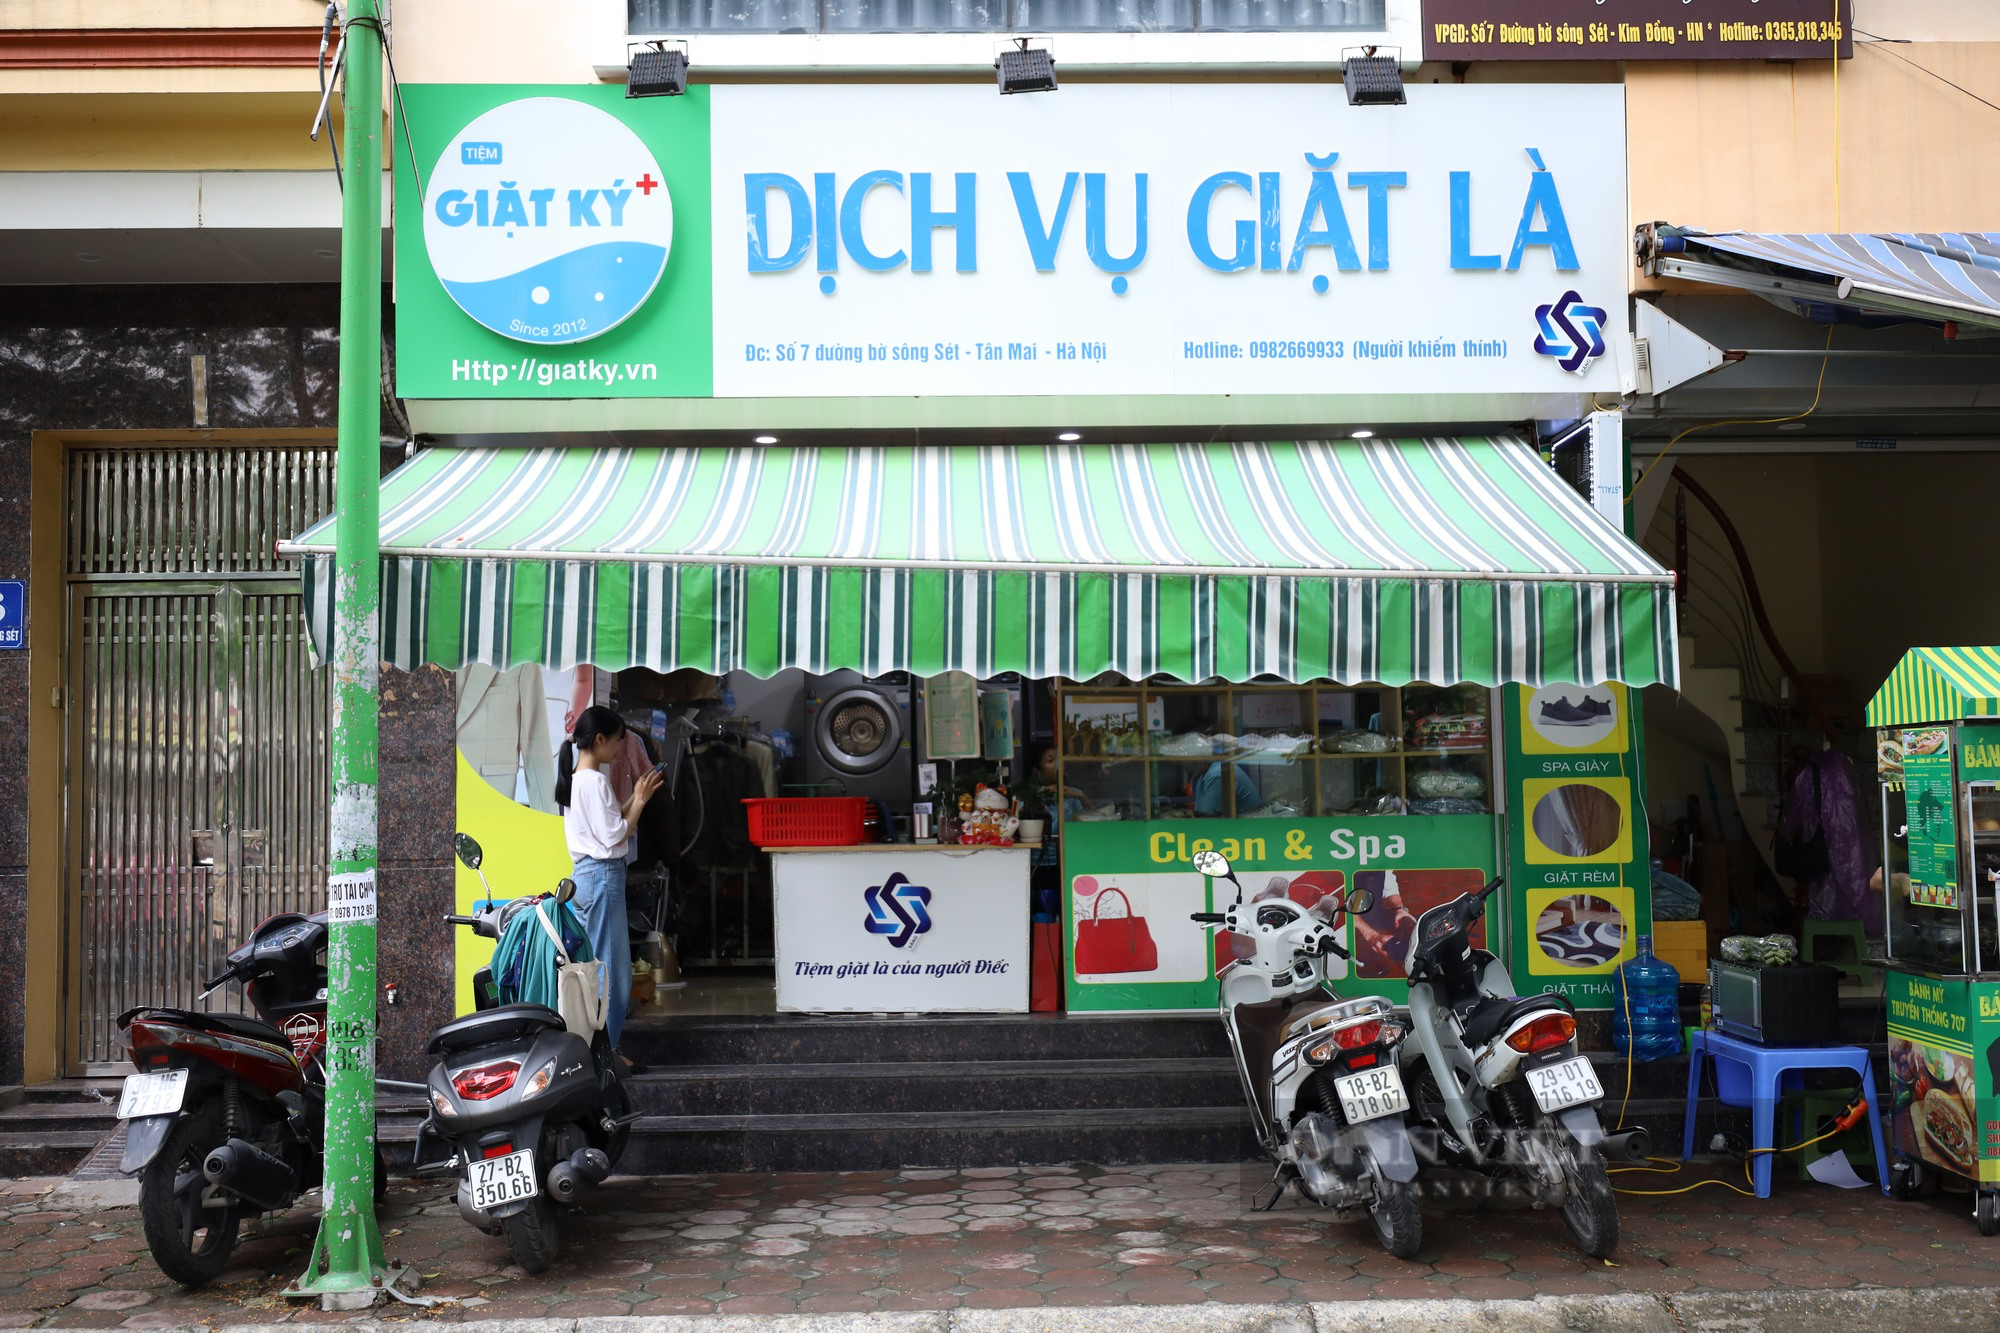 Tiệm giặt là đặc biệt ở Hà Nội chỉ sử dụng “cử chỉ bằng tay” để giao tiếp với khách hàng - Ảnh 1.